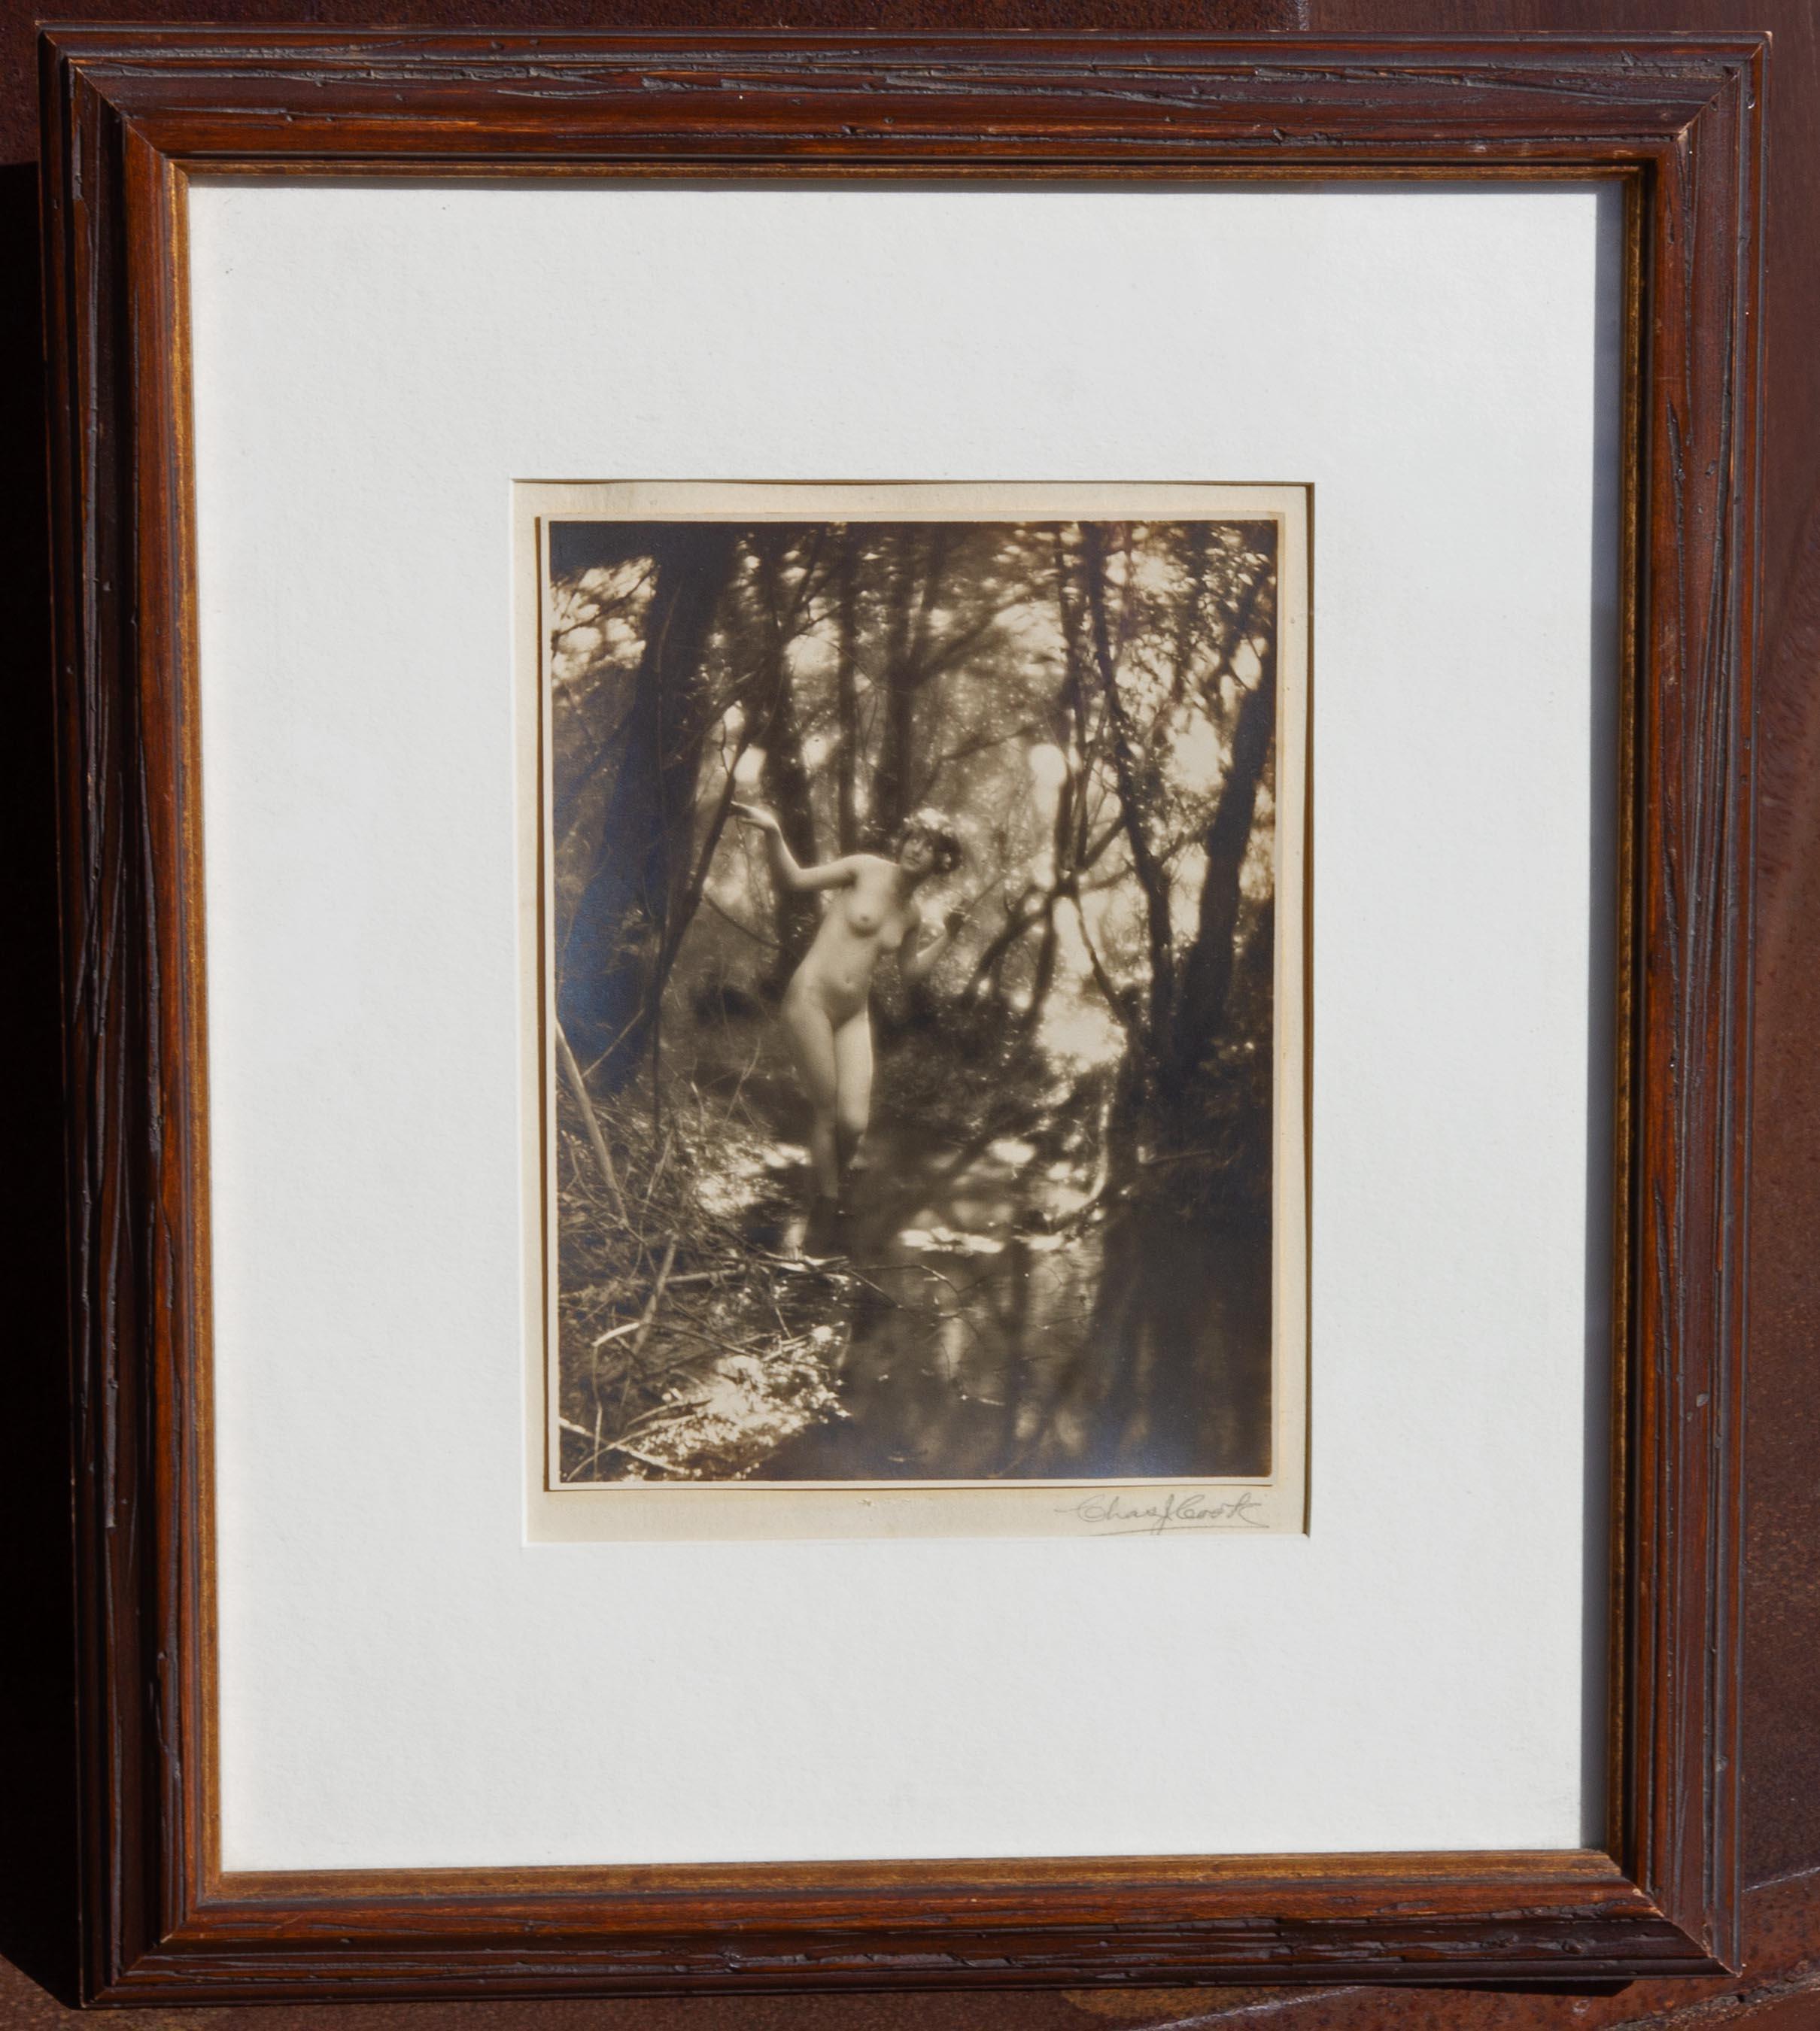 Nudefarbene Nymphe von Charles Cook aus Holz von Charles Cook, um 1910, Viktorianische Fotografie (Grau), Nude Photograph, von Unknown